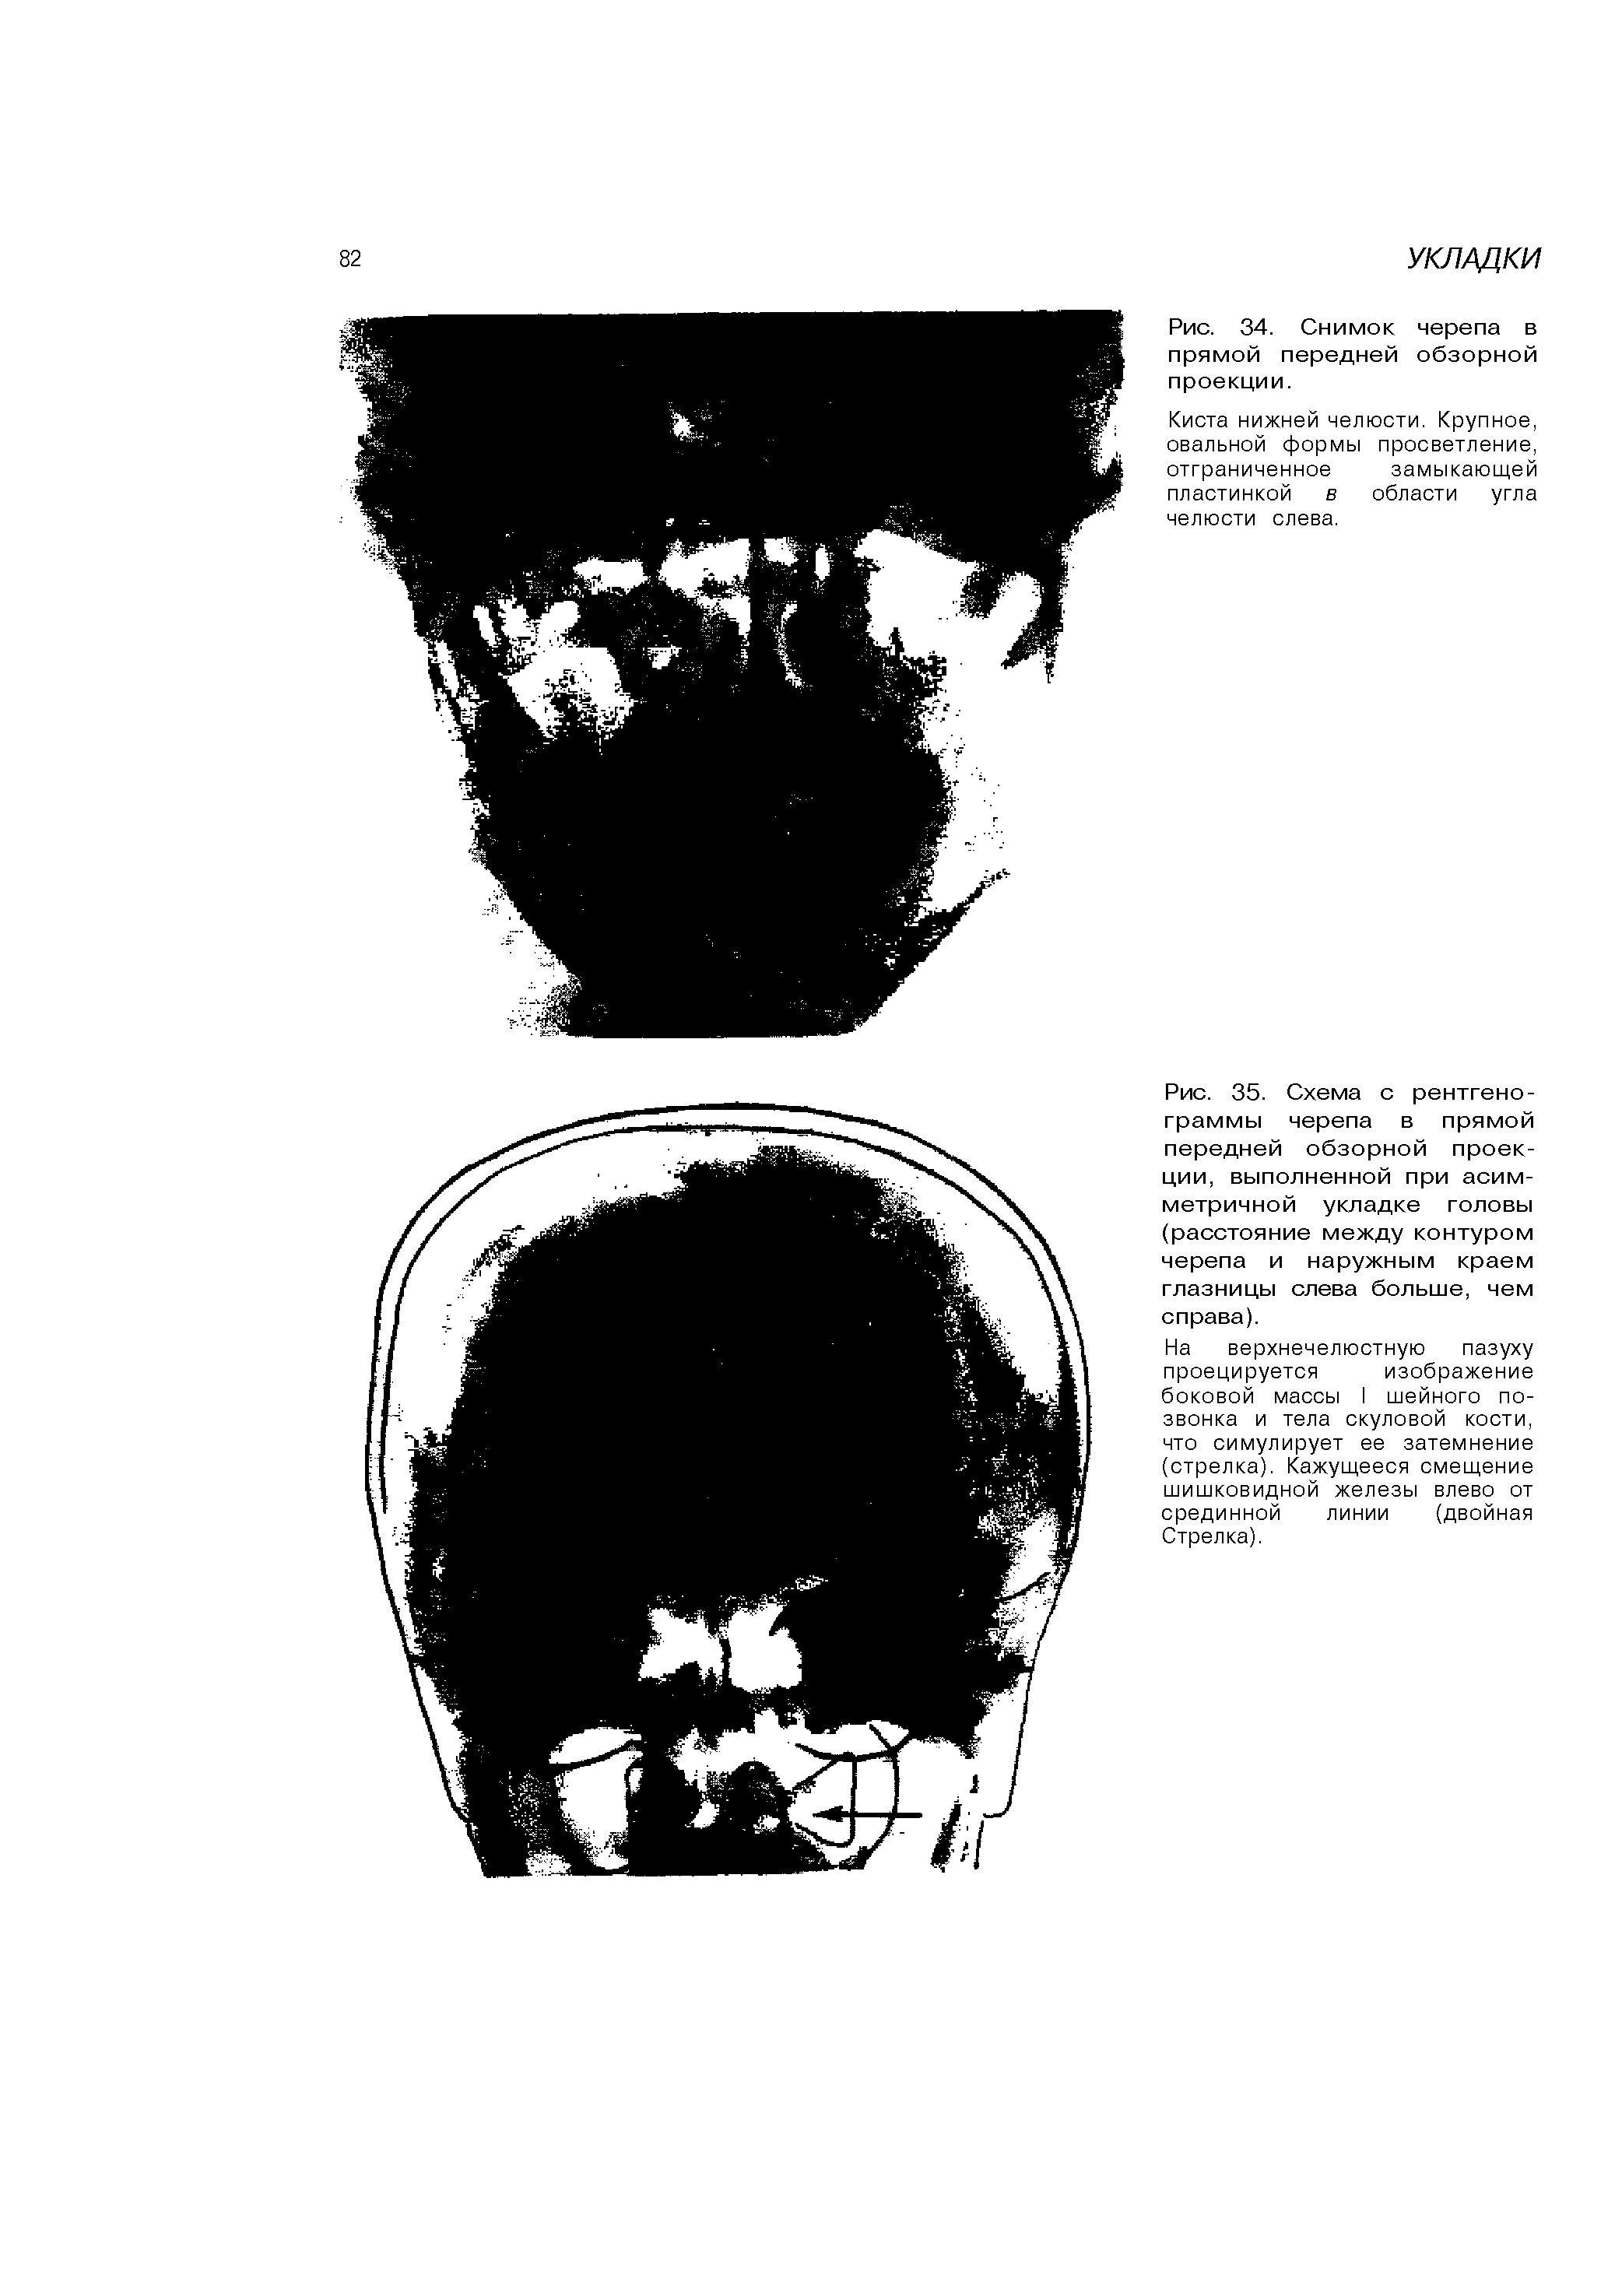 Рис. 35. Схема с рентгенограммы черепа в прямой передней обзорной проекции, выполненной при асимметричной укладке головы (расстояние между контуром черепа и наружным краем глазницы слева больше, чем справа).